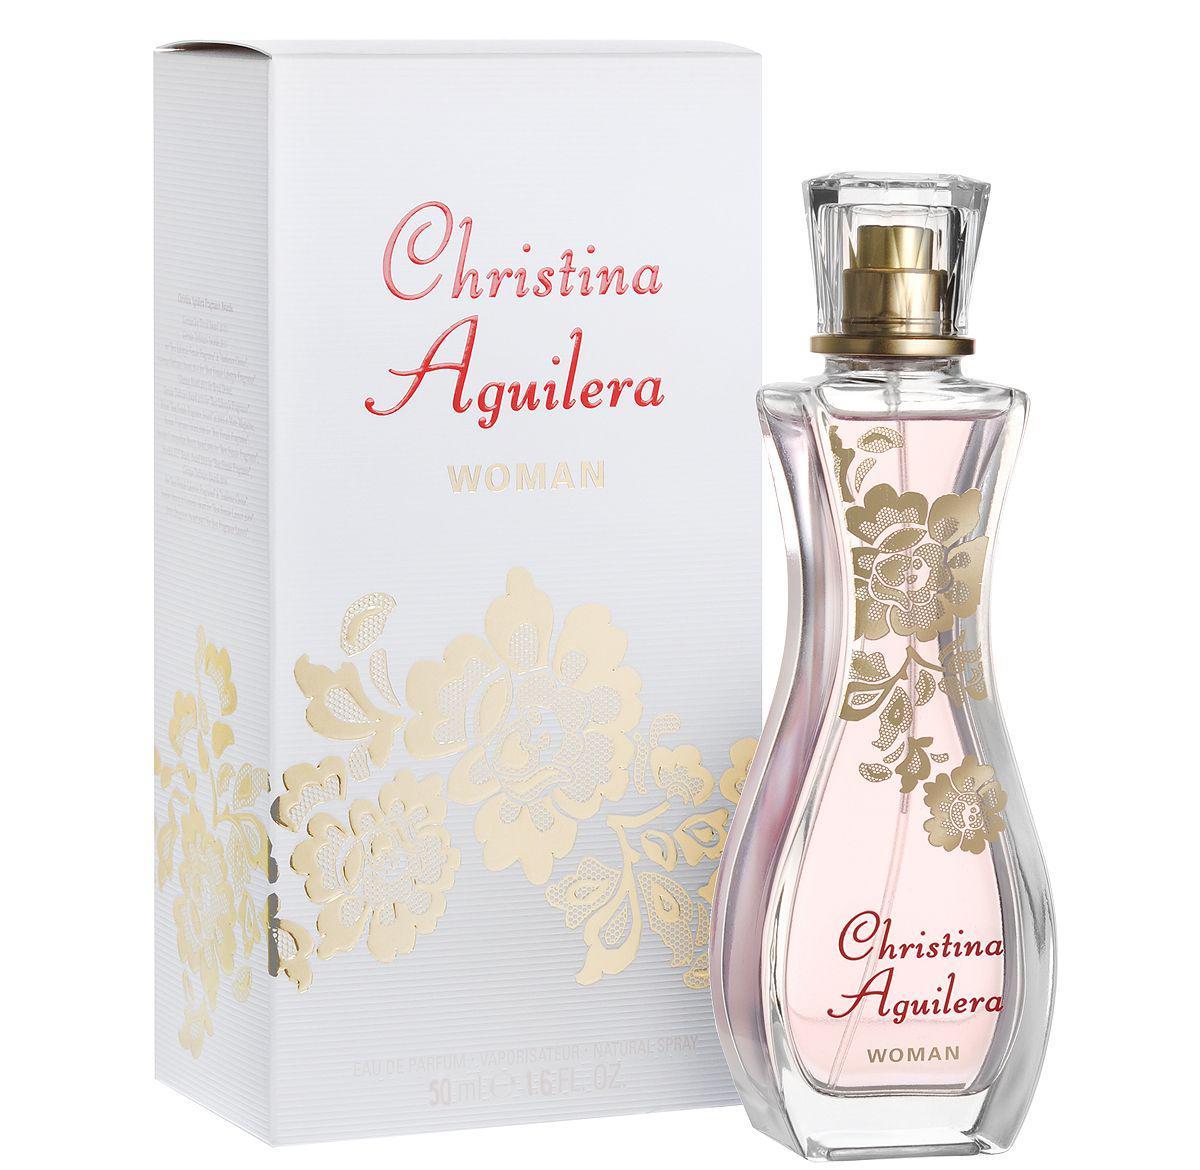 Купить Парфюмерная вода Christina Aguilera, Christina Aguilera Woman 75.0ml, США